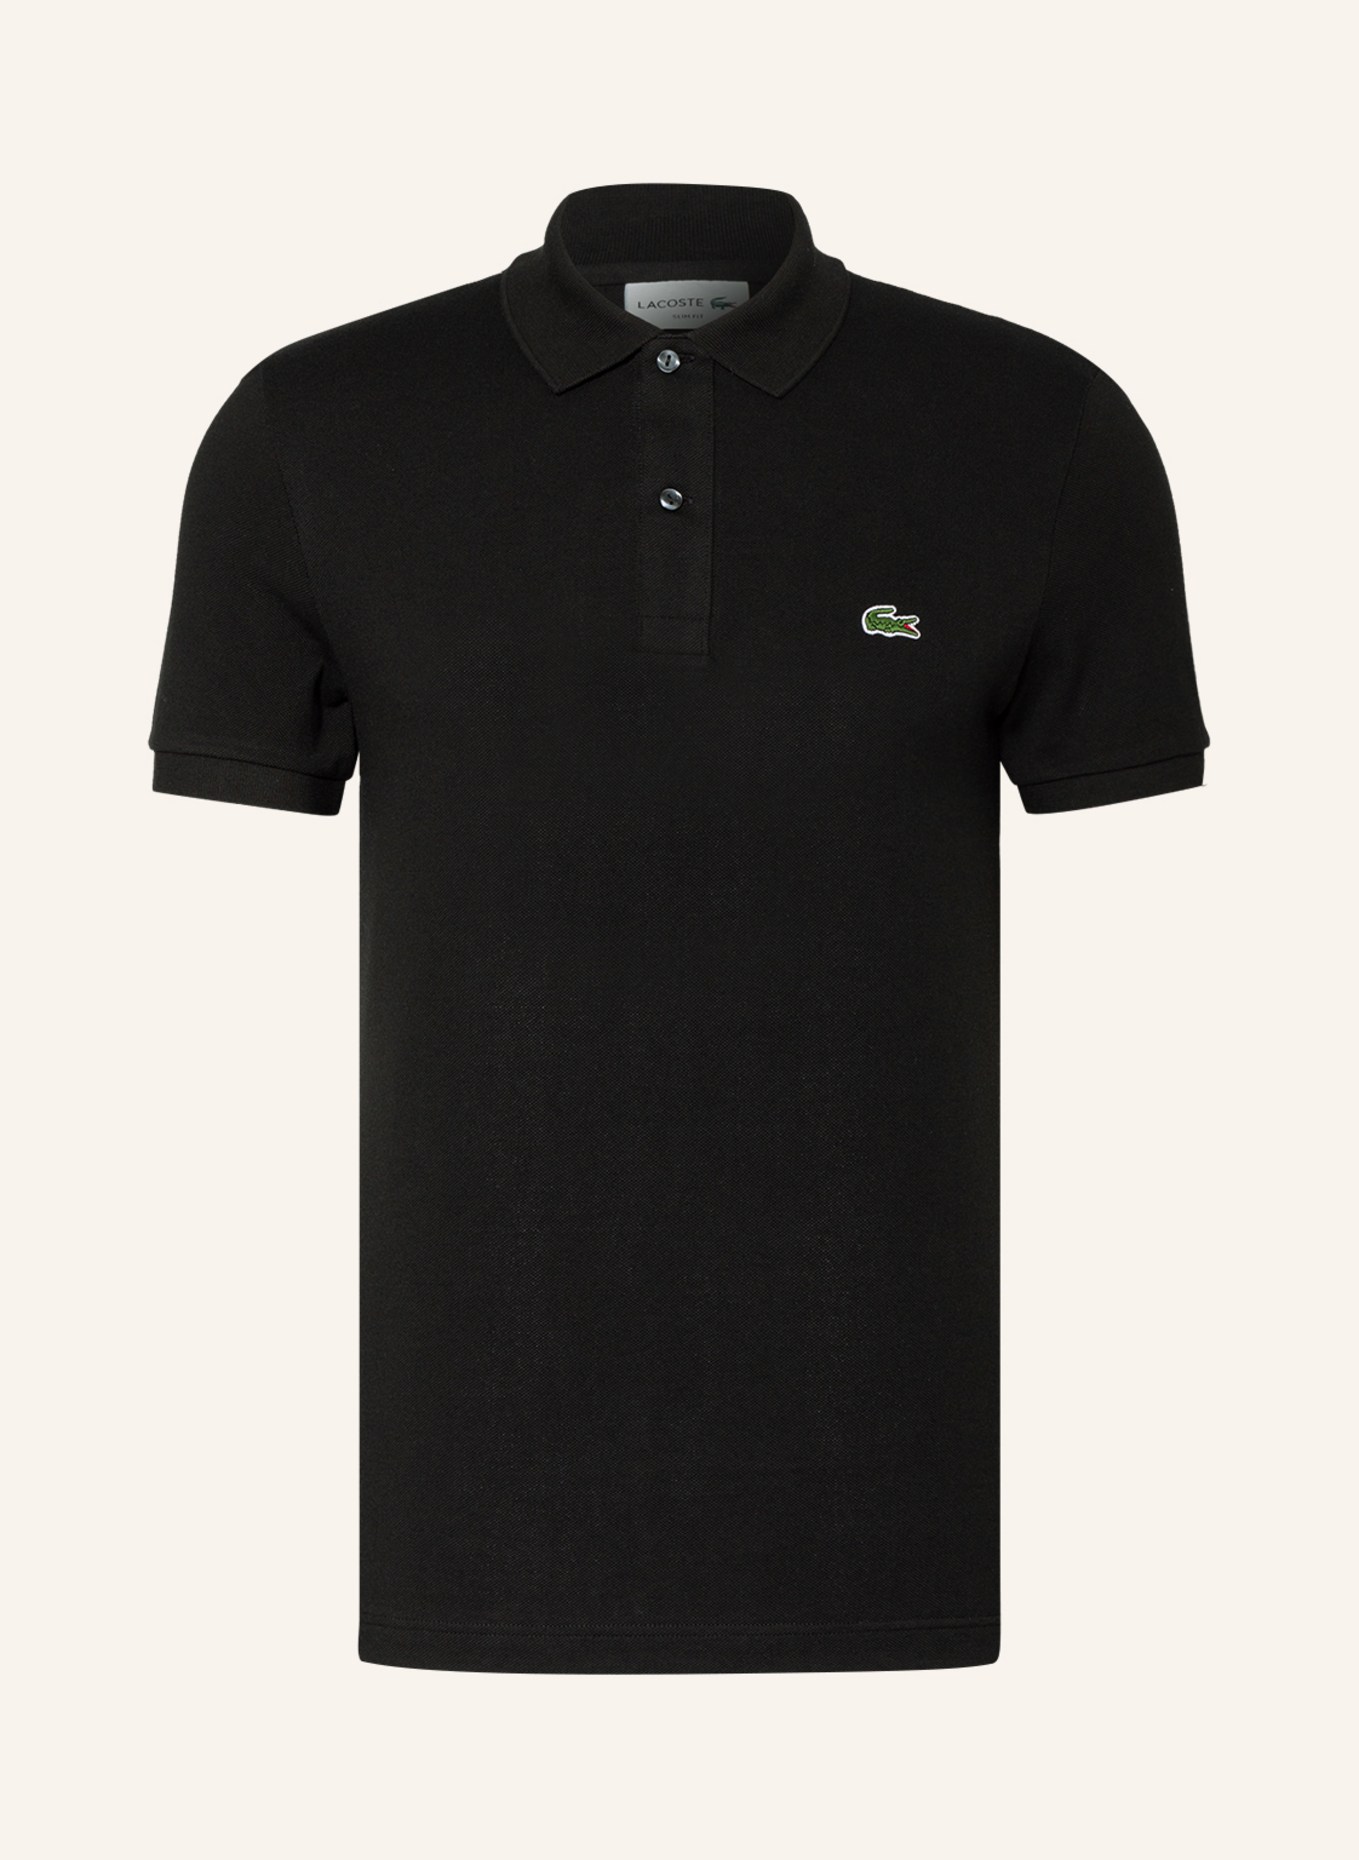 LACOSTE Piqué-Poloshirt Slim Fit, Farbe: SCHWARZ (Bild 1)